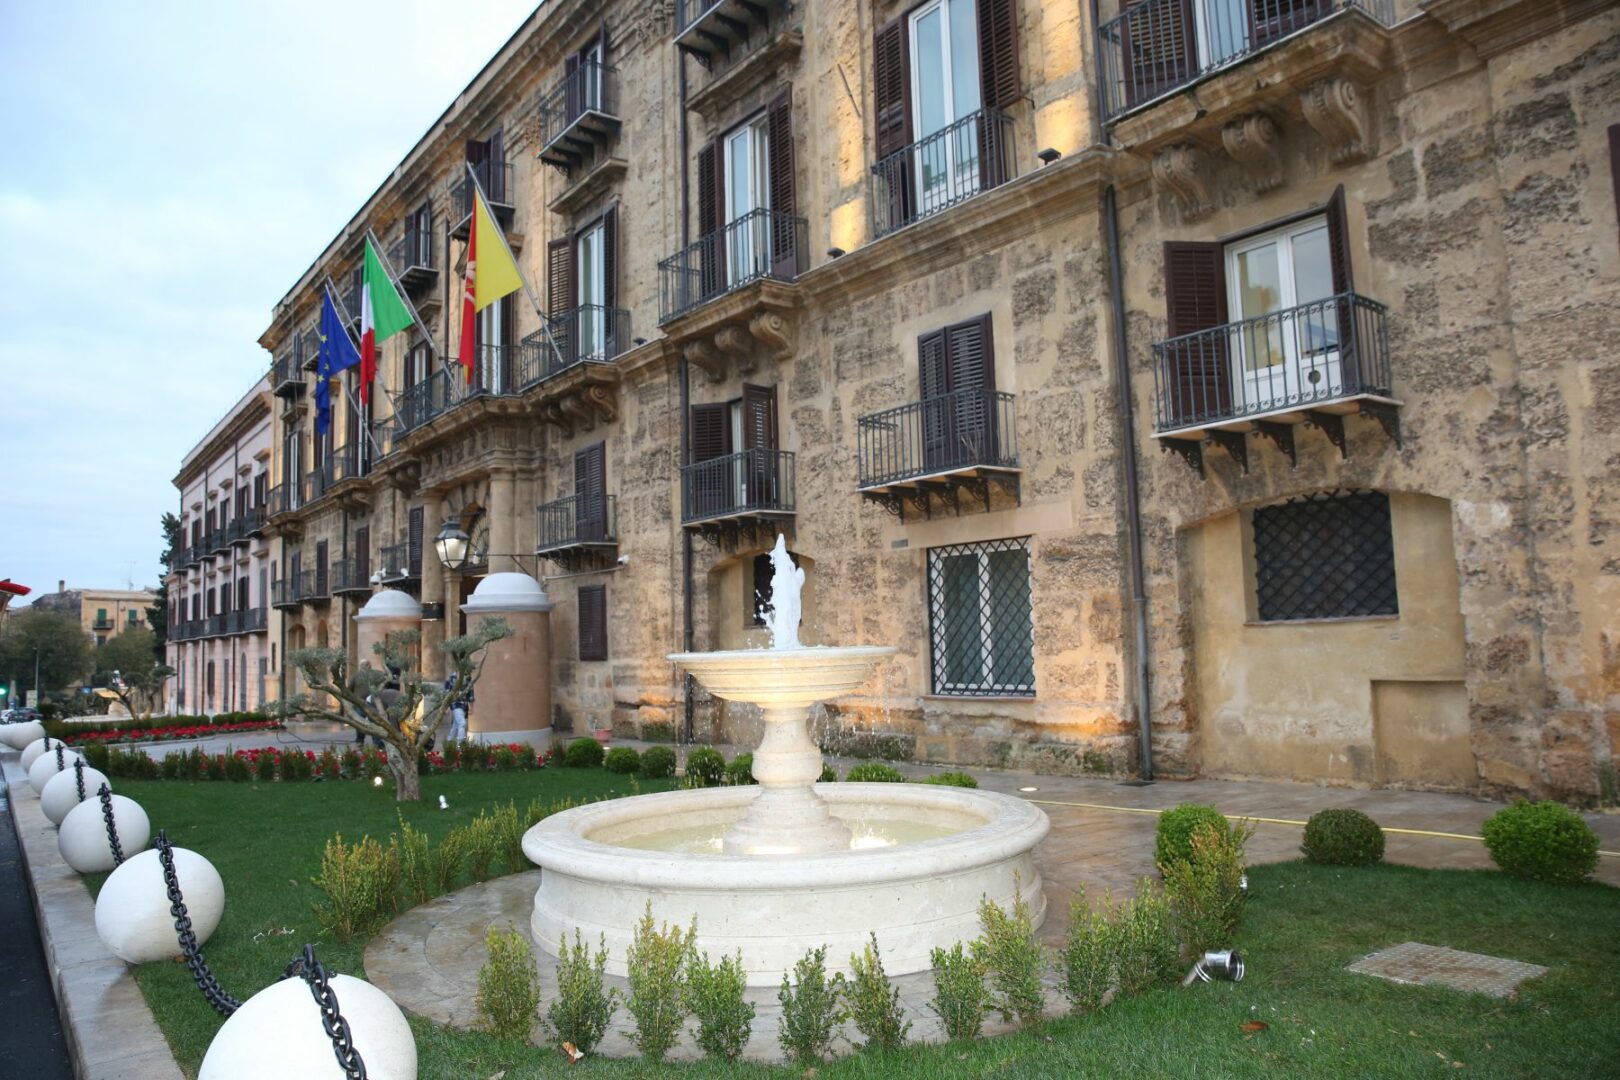 Palazzo d’Orleans a Palermo chiuso per Covid, disposta sanificazione uffici